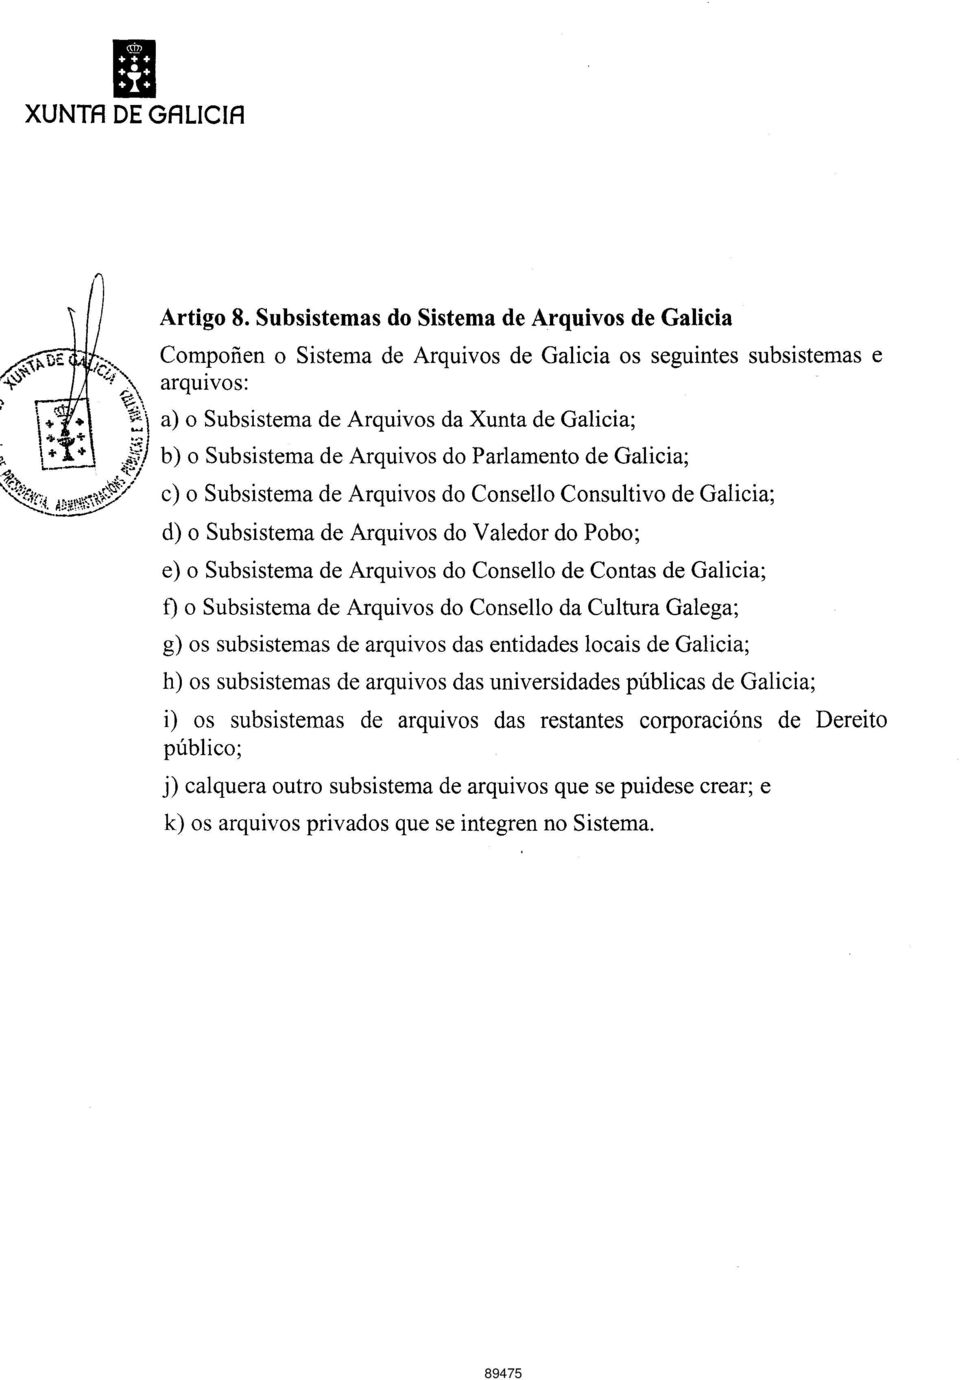 Arquivos do Parlamento de Galicia; c) o Subsistema de Arquivos do Consello Consultivo de Galicia; d) o Subsistema de Arquivos do Valedor do Pobo; e) o Subsistema de Arquivos do Consello de Contas de